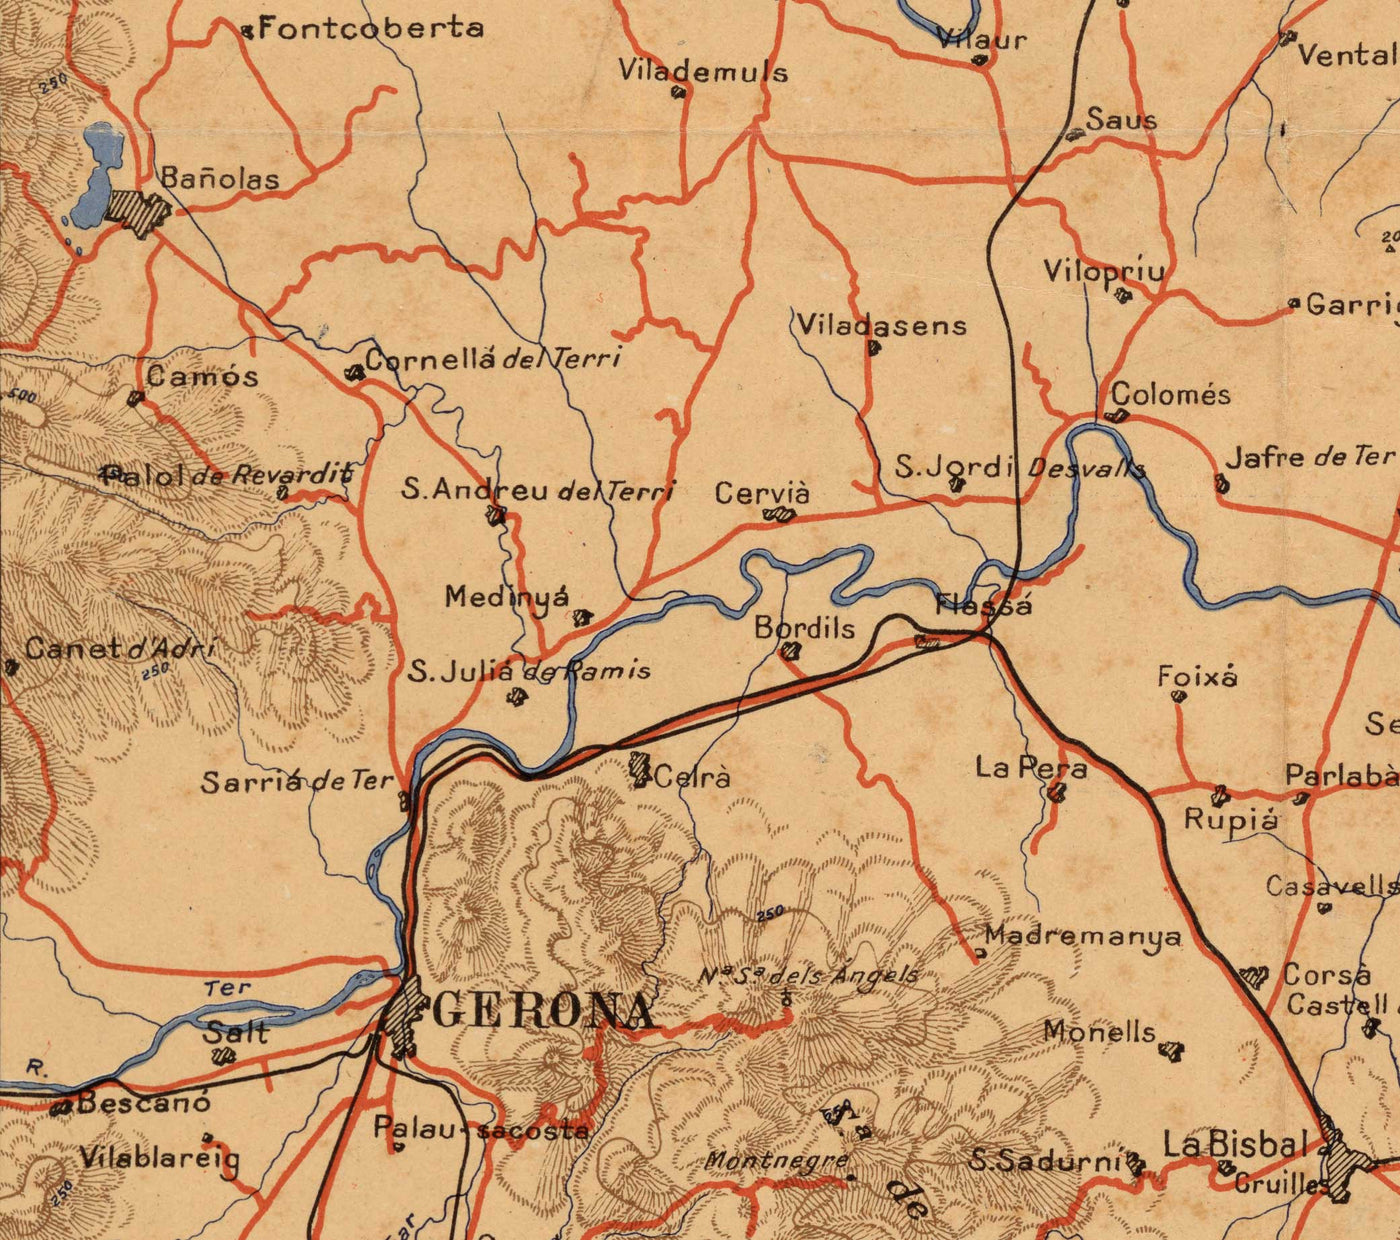 Old Map of Costa Brava by Dolcet in 1950 - Girona, Figueres, Tossa de Mar, Lloret de Mar, Blanes